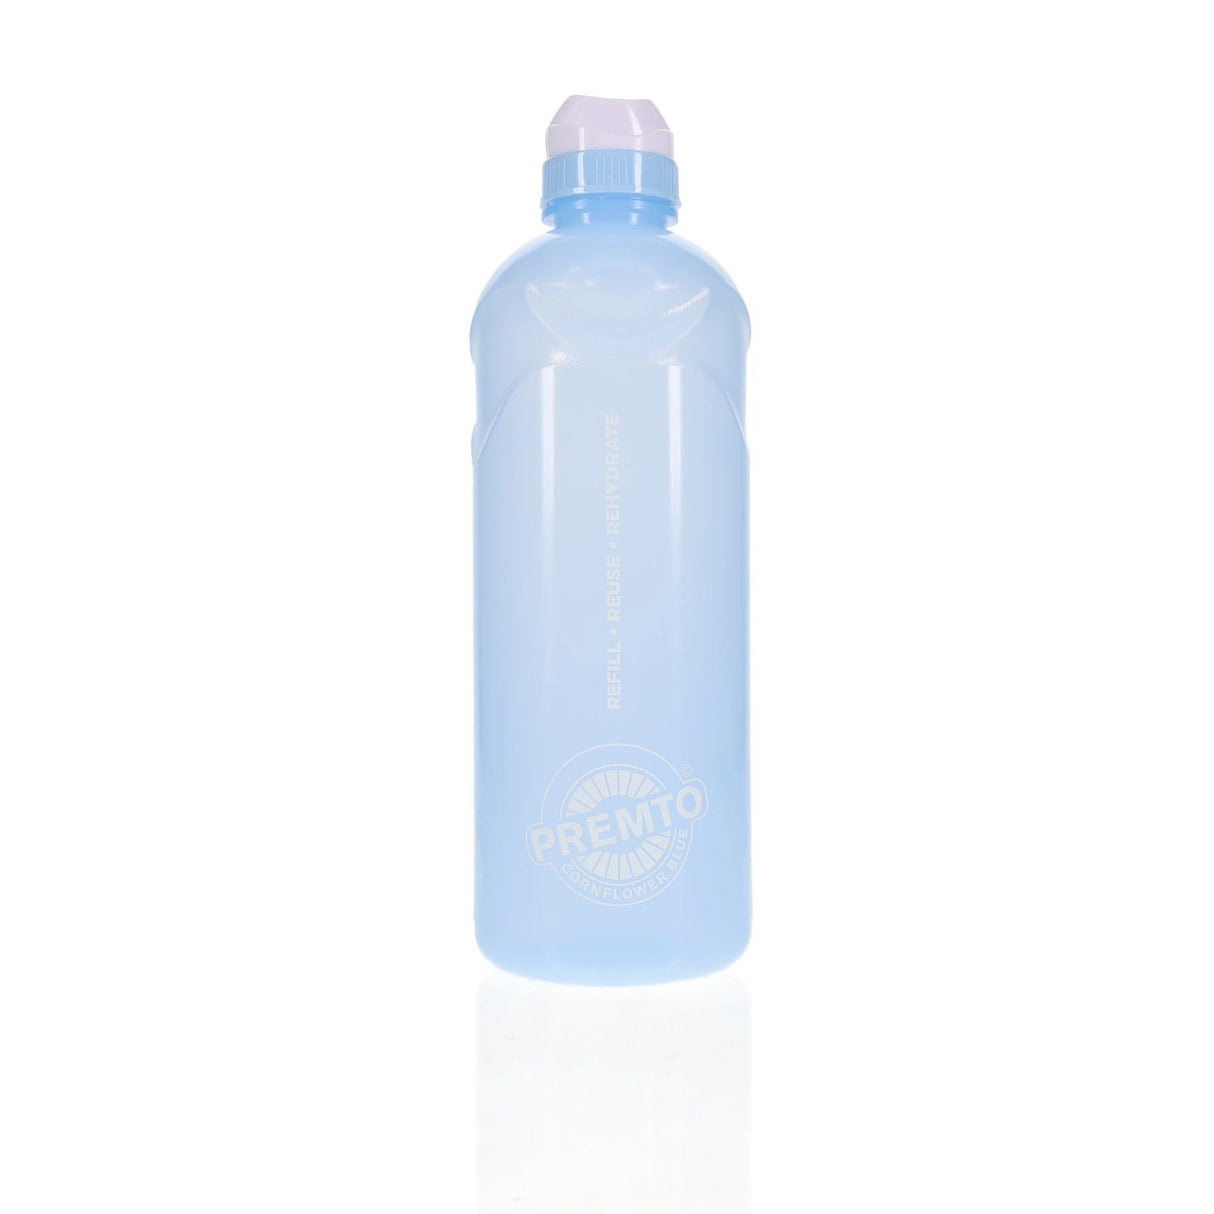 Premto Pastel 1 Litre Stealth Bottle - Cornflower Blue | Stationery Shop UK